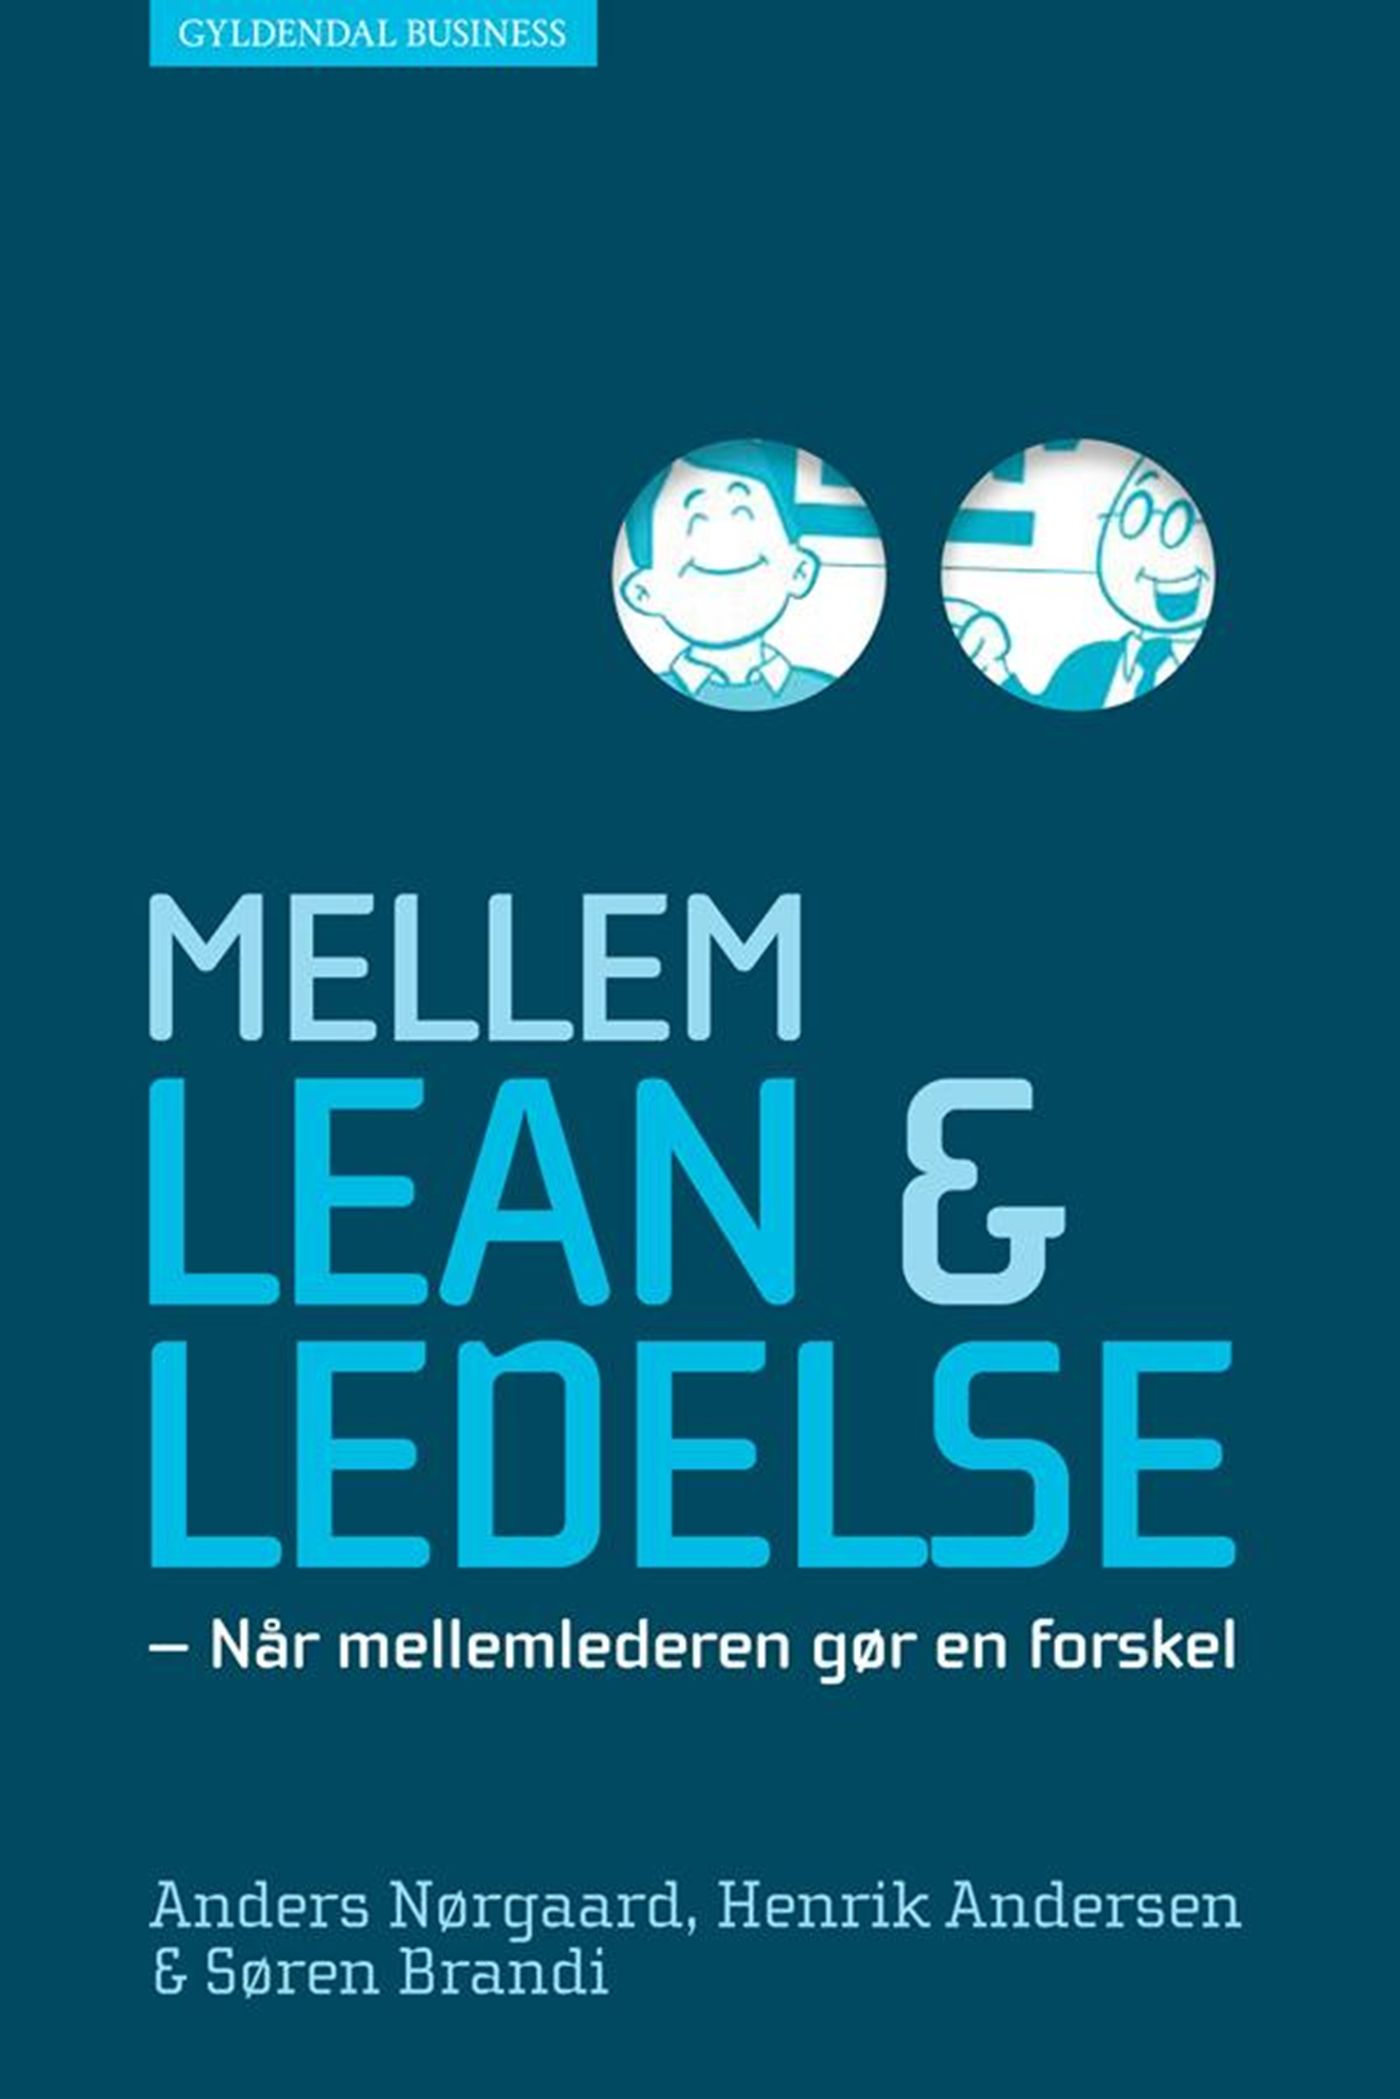 Mellem lean og ledelse, e-bok av Henrik Andersen, Søren Brandi, Anders Nørgaard